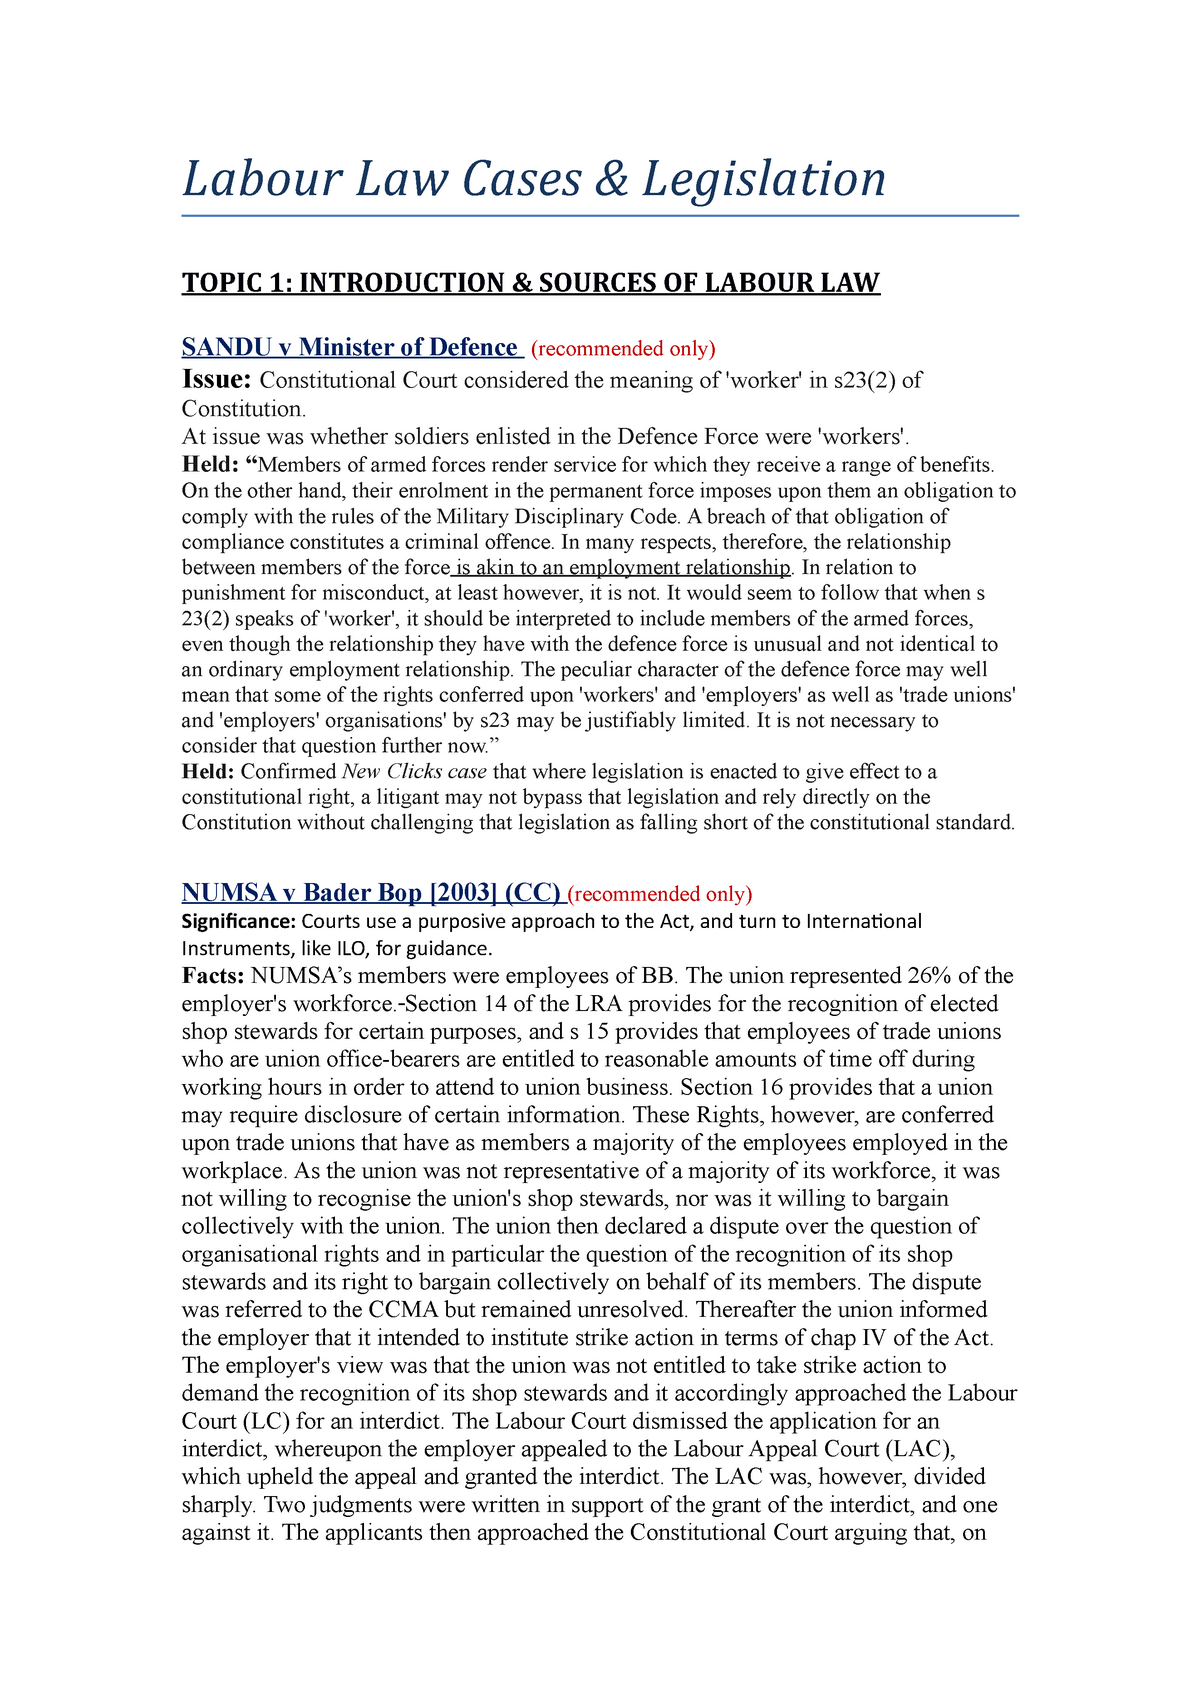 case study labor law